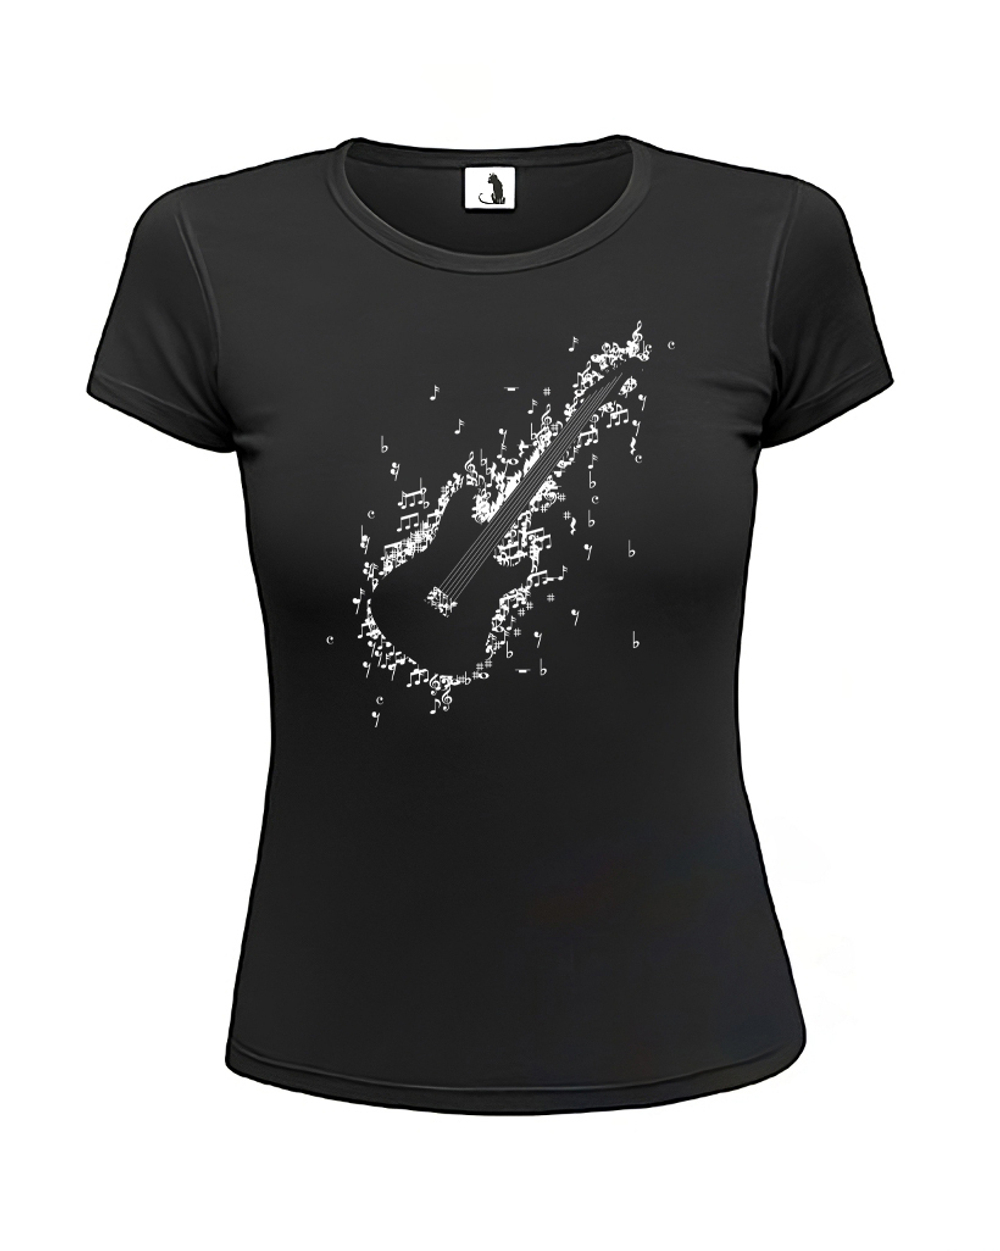 Футболка гитара из нот женская приталенная черная с белым рисунком